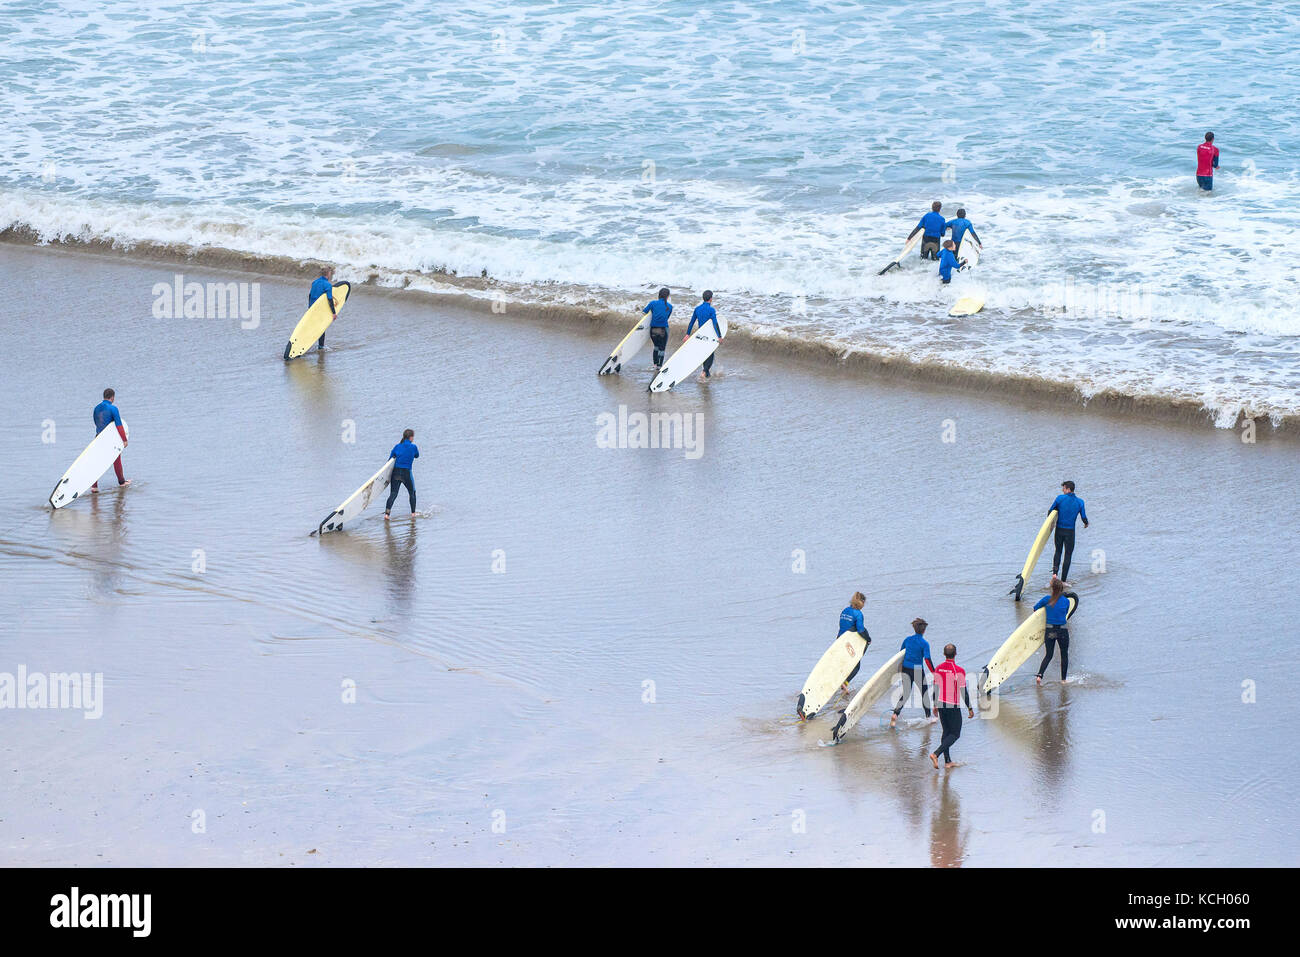 Le surf au Royaume-Uni. Les jeunes gens portant leurs planches au début de leur leçon de surf. Cornwall Banque D'Images